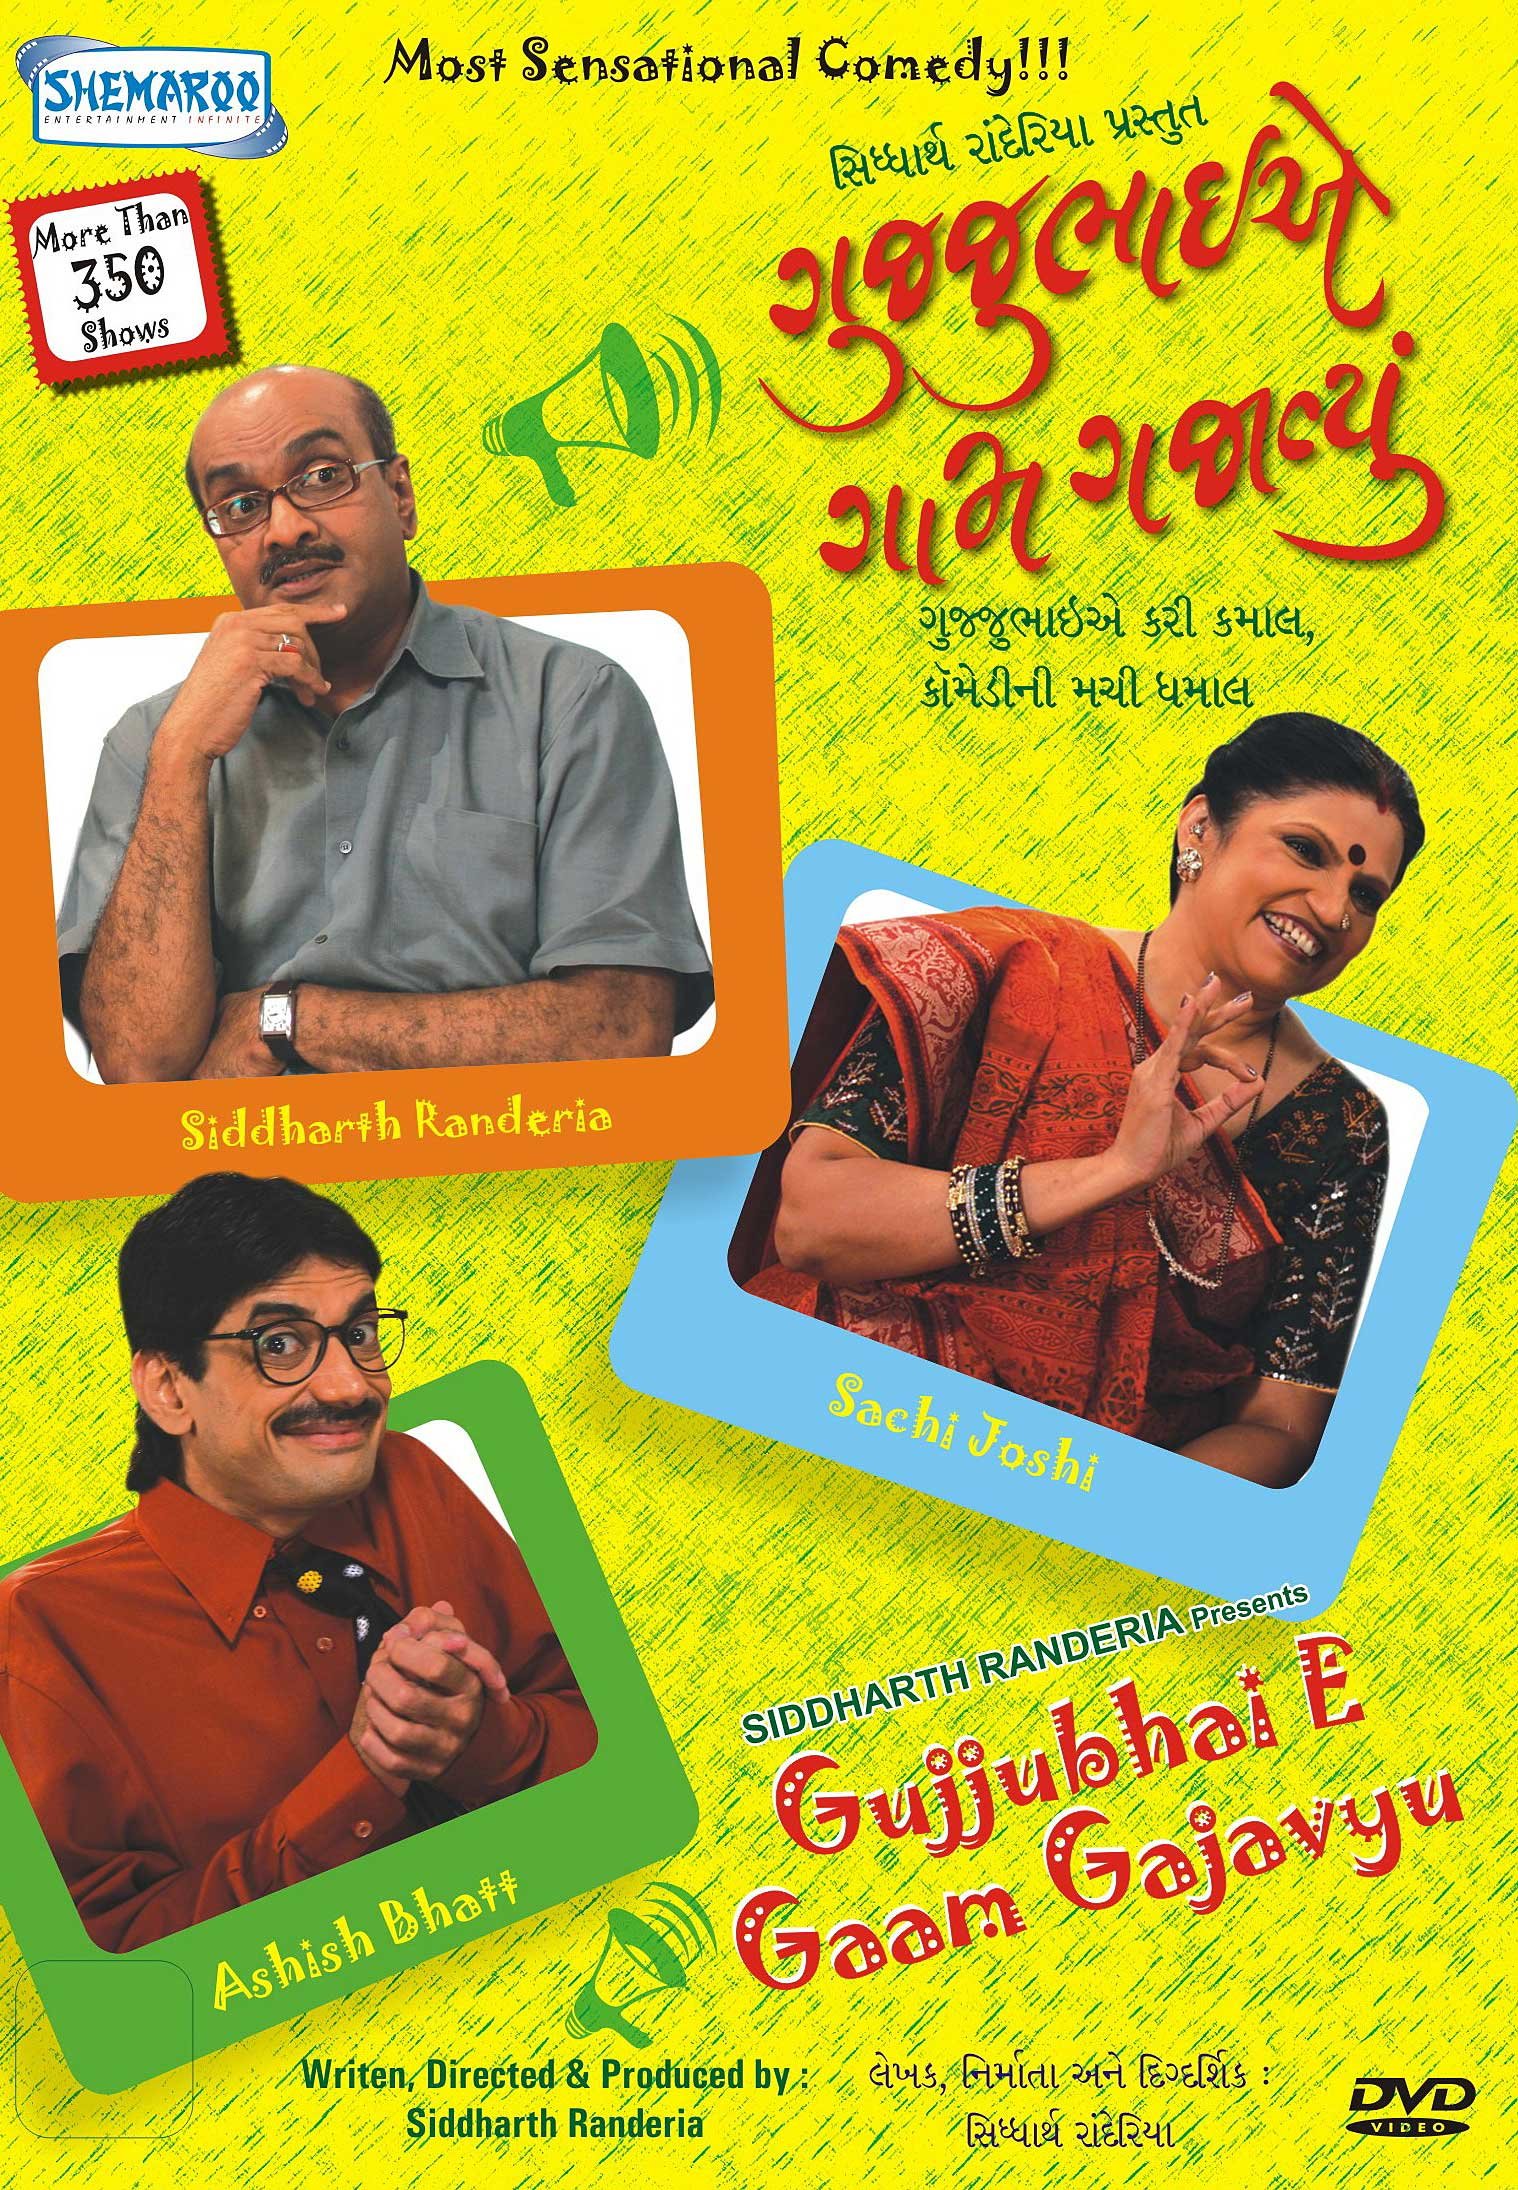 gujjubhai-e-gaam-gajavyu-movie-purchase-or-watch-online